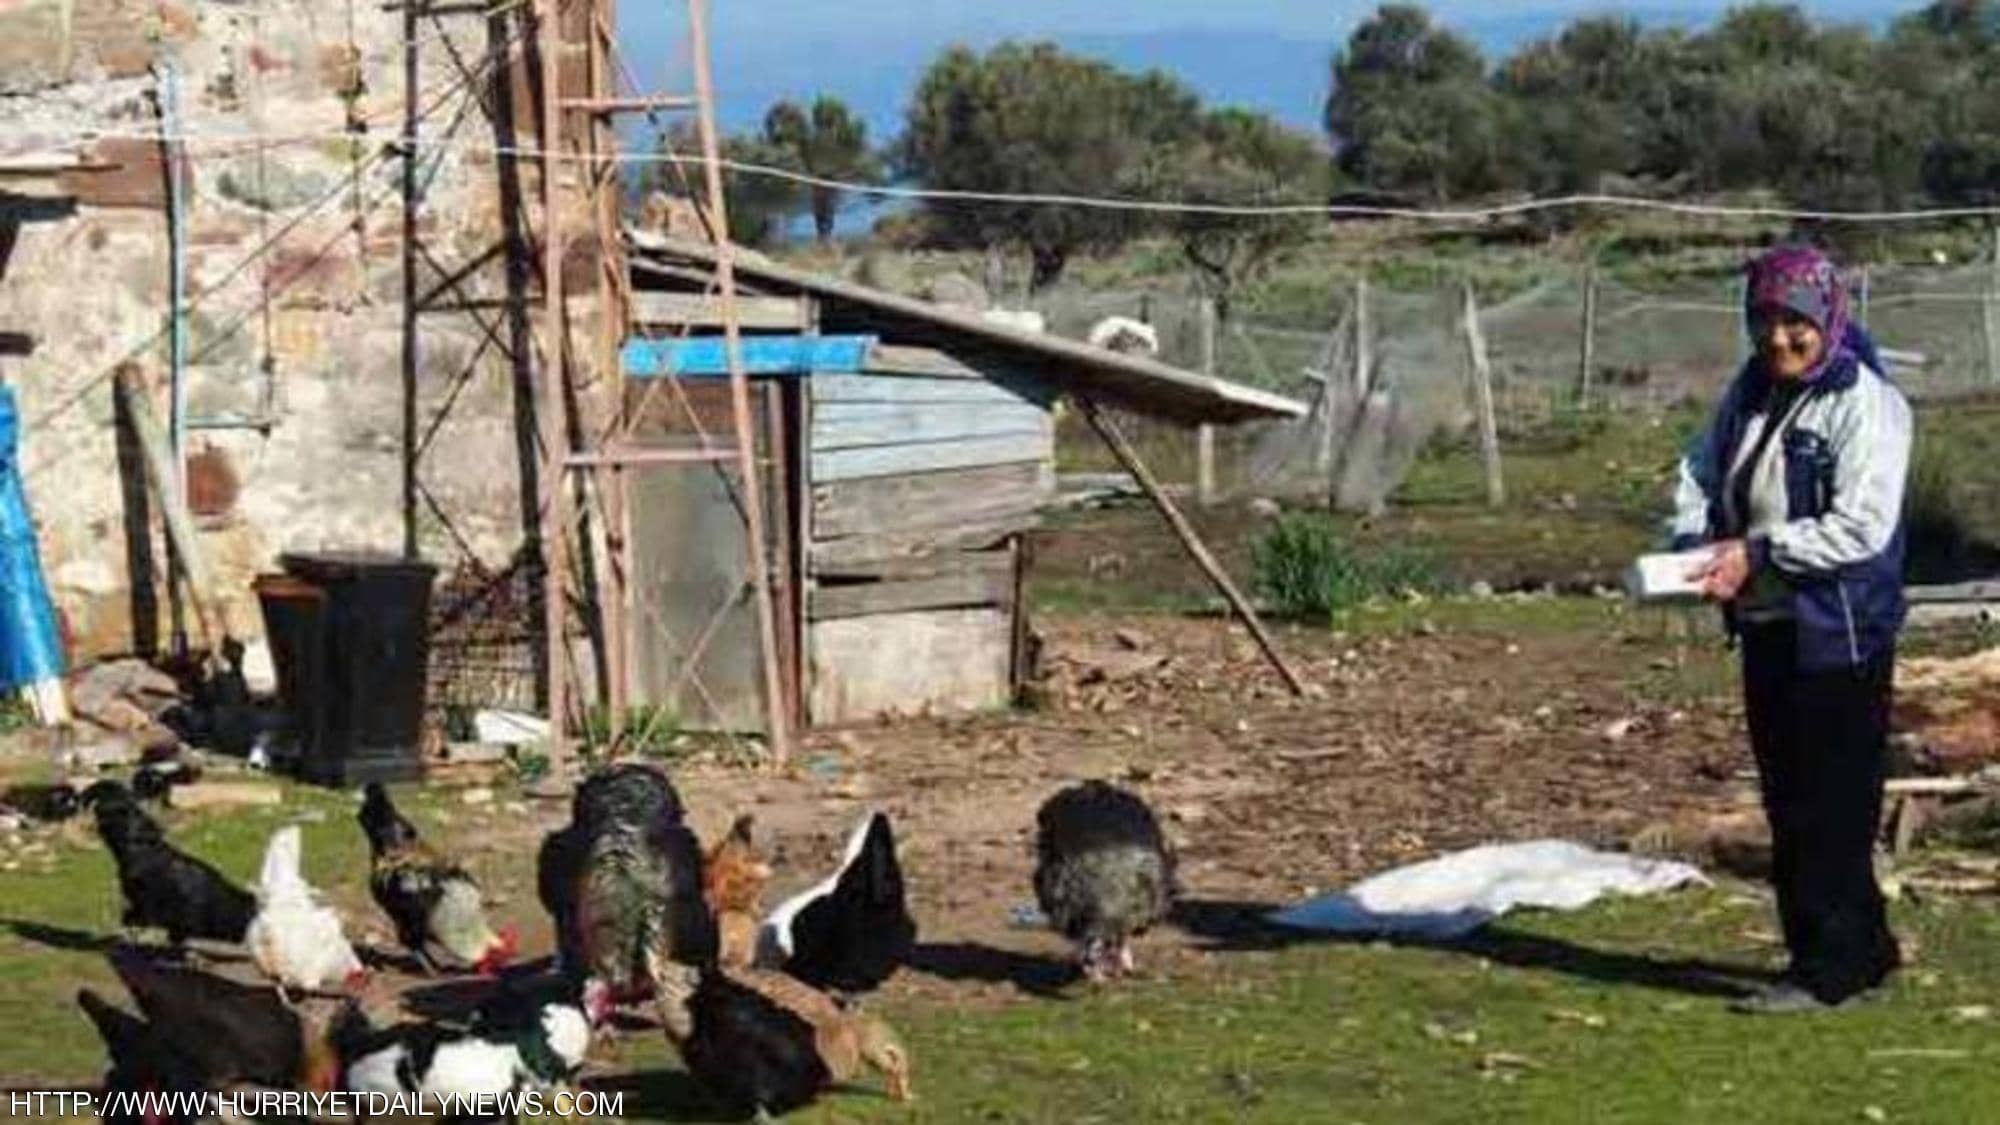 حسين افكان وزوجته يعشان على تربية الدجاج والأغنام